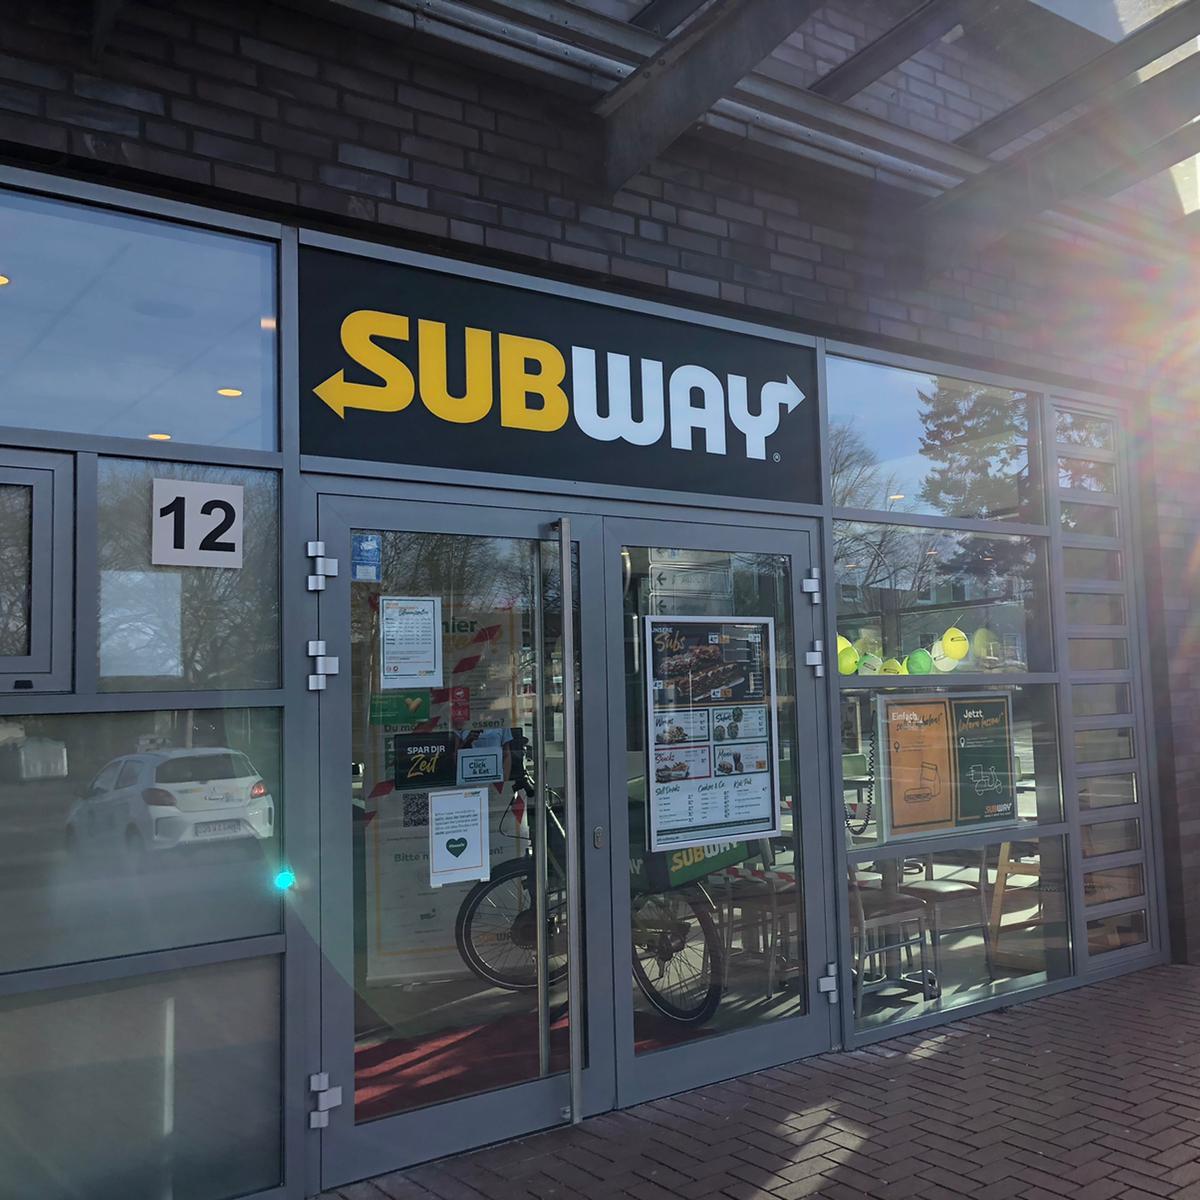 Restaurant "Subway" in  Munster